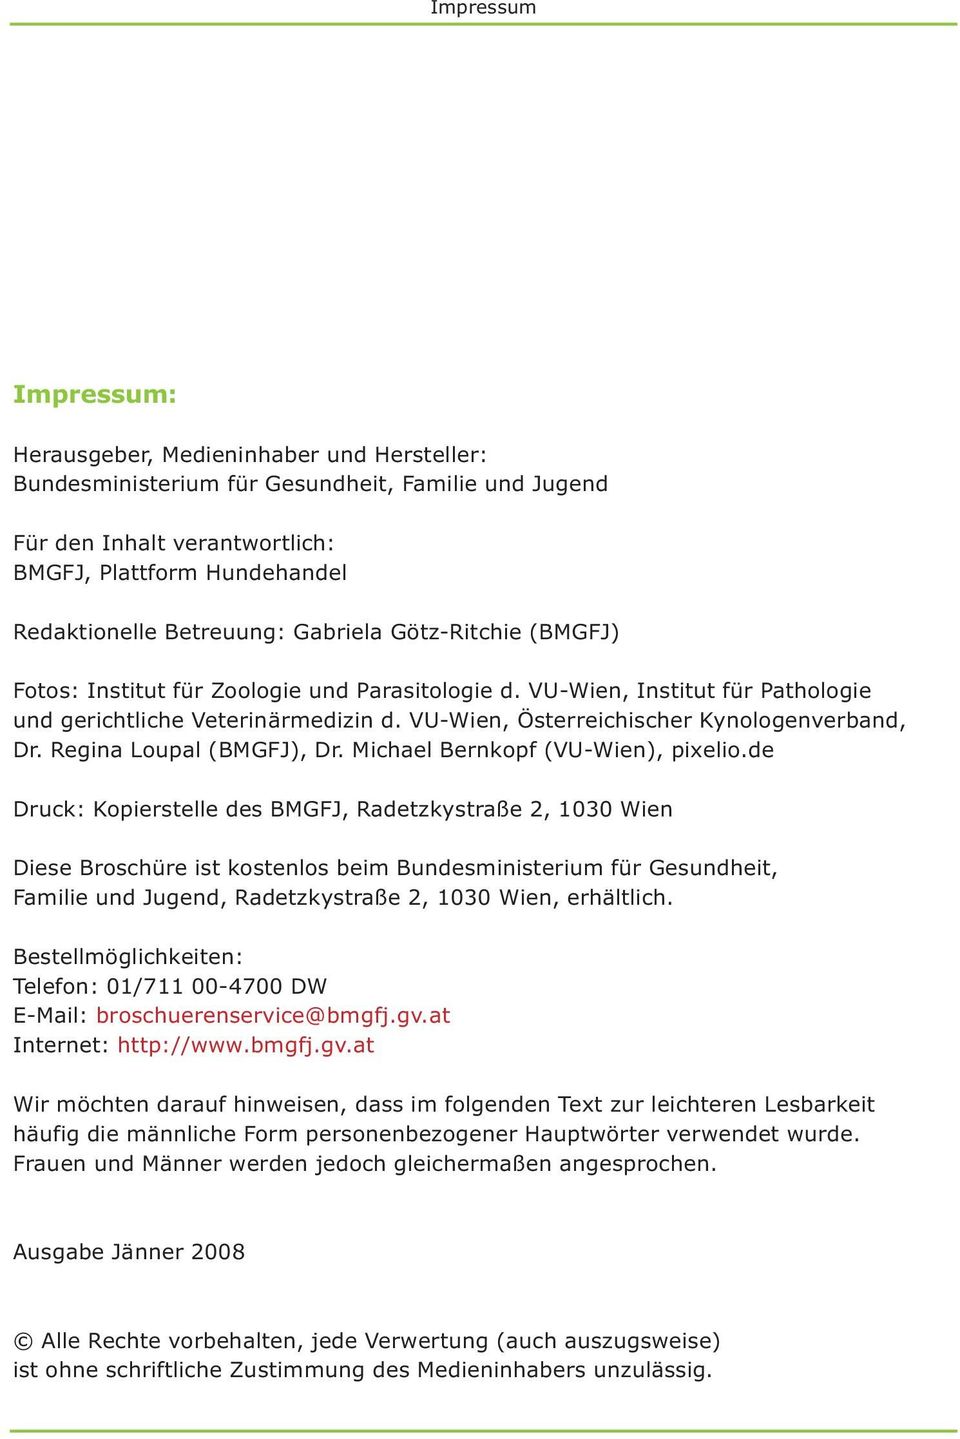 VU-Wien, Österreichischer Kynologenverband, Dr. Regina Loupal (BMGFJ), Dr. Michael Bernkopf (VU-Wien), pixelio.